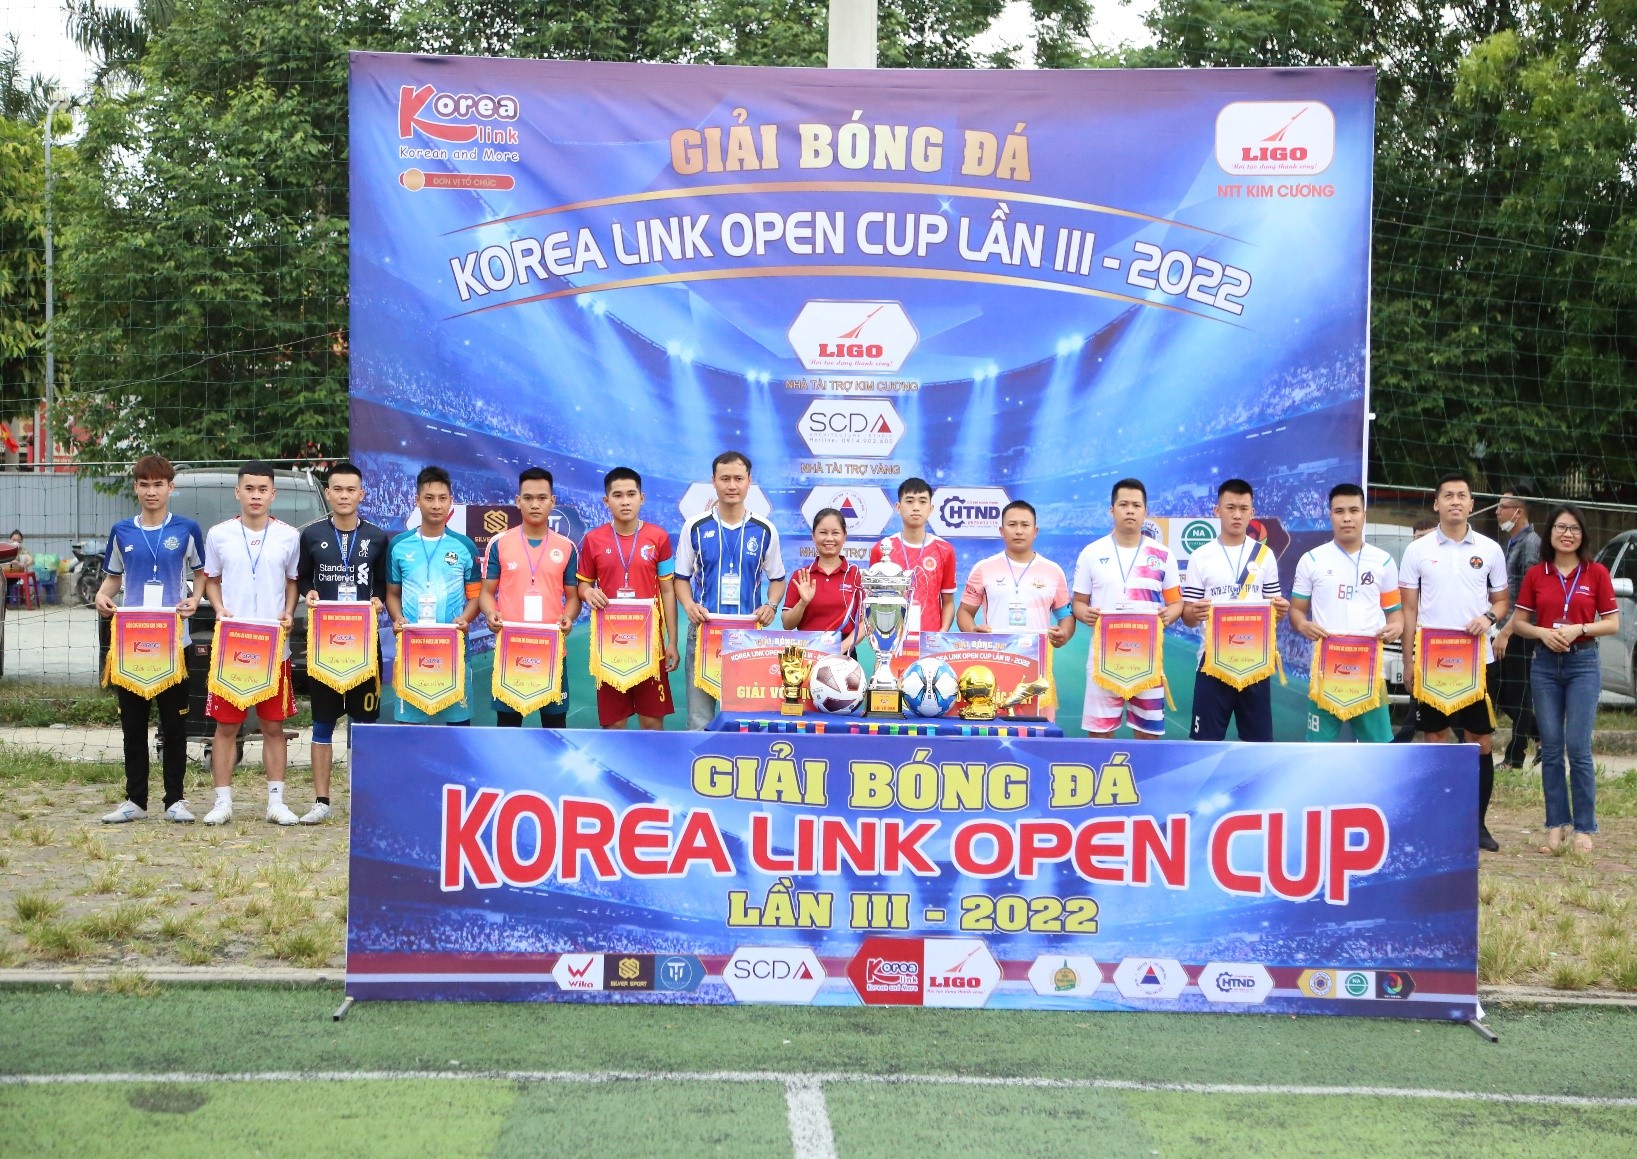 Rực rỡ ngày khai mạc giải bóng đá Korea Link Open Cup lần thứ 3 – năm 2022